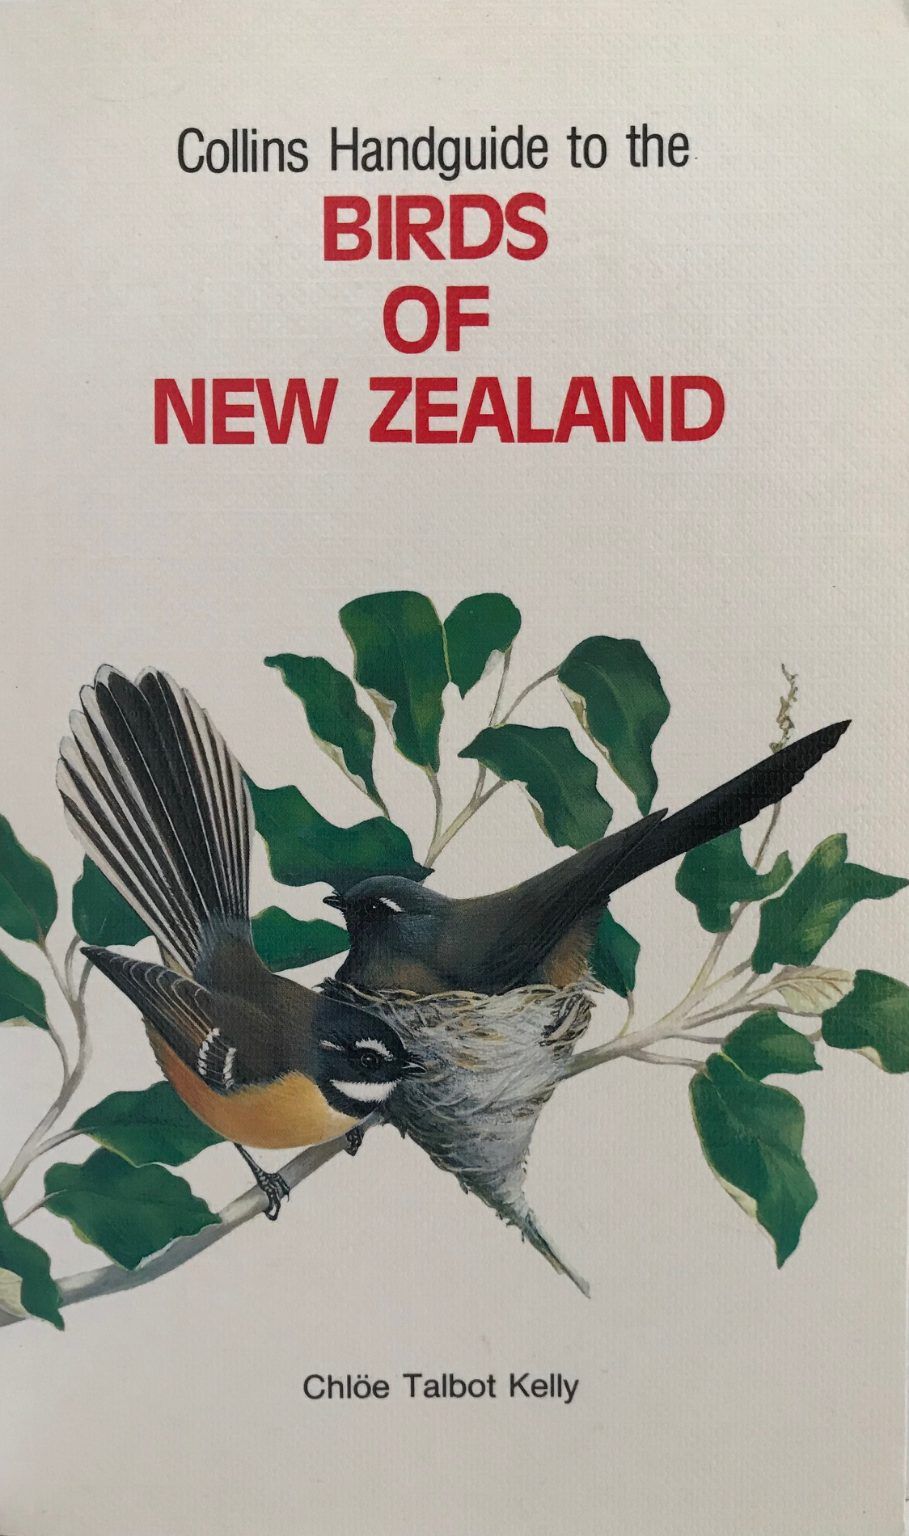 THE BIRDS OF NEW ZEALAND: Collins Handguide